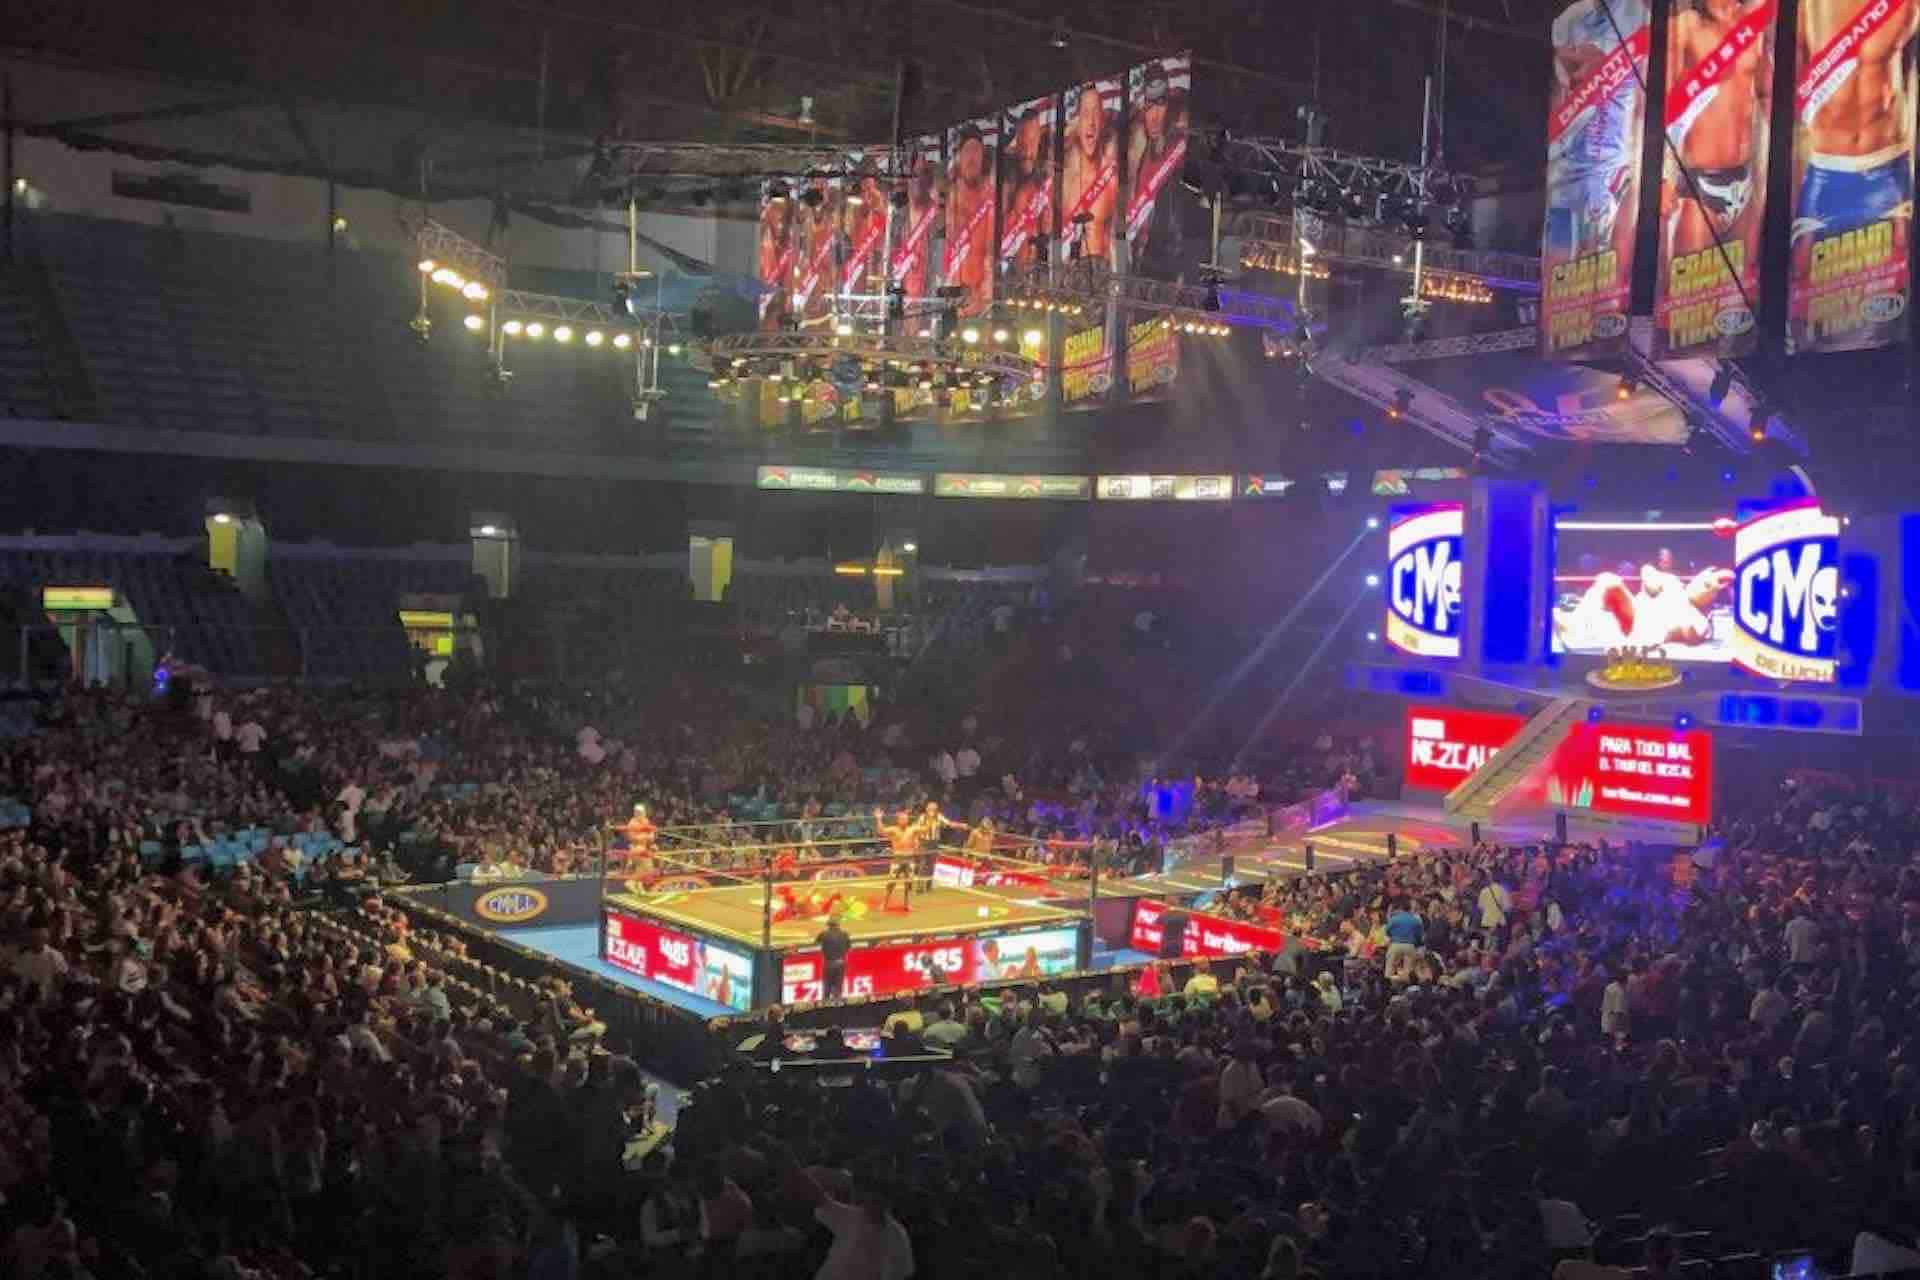 Lucha Libre Mexico City arena